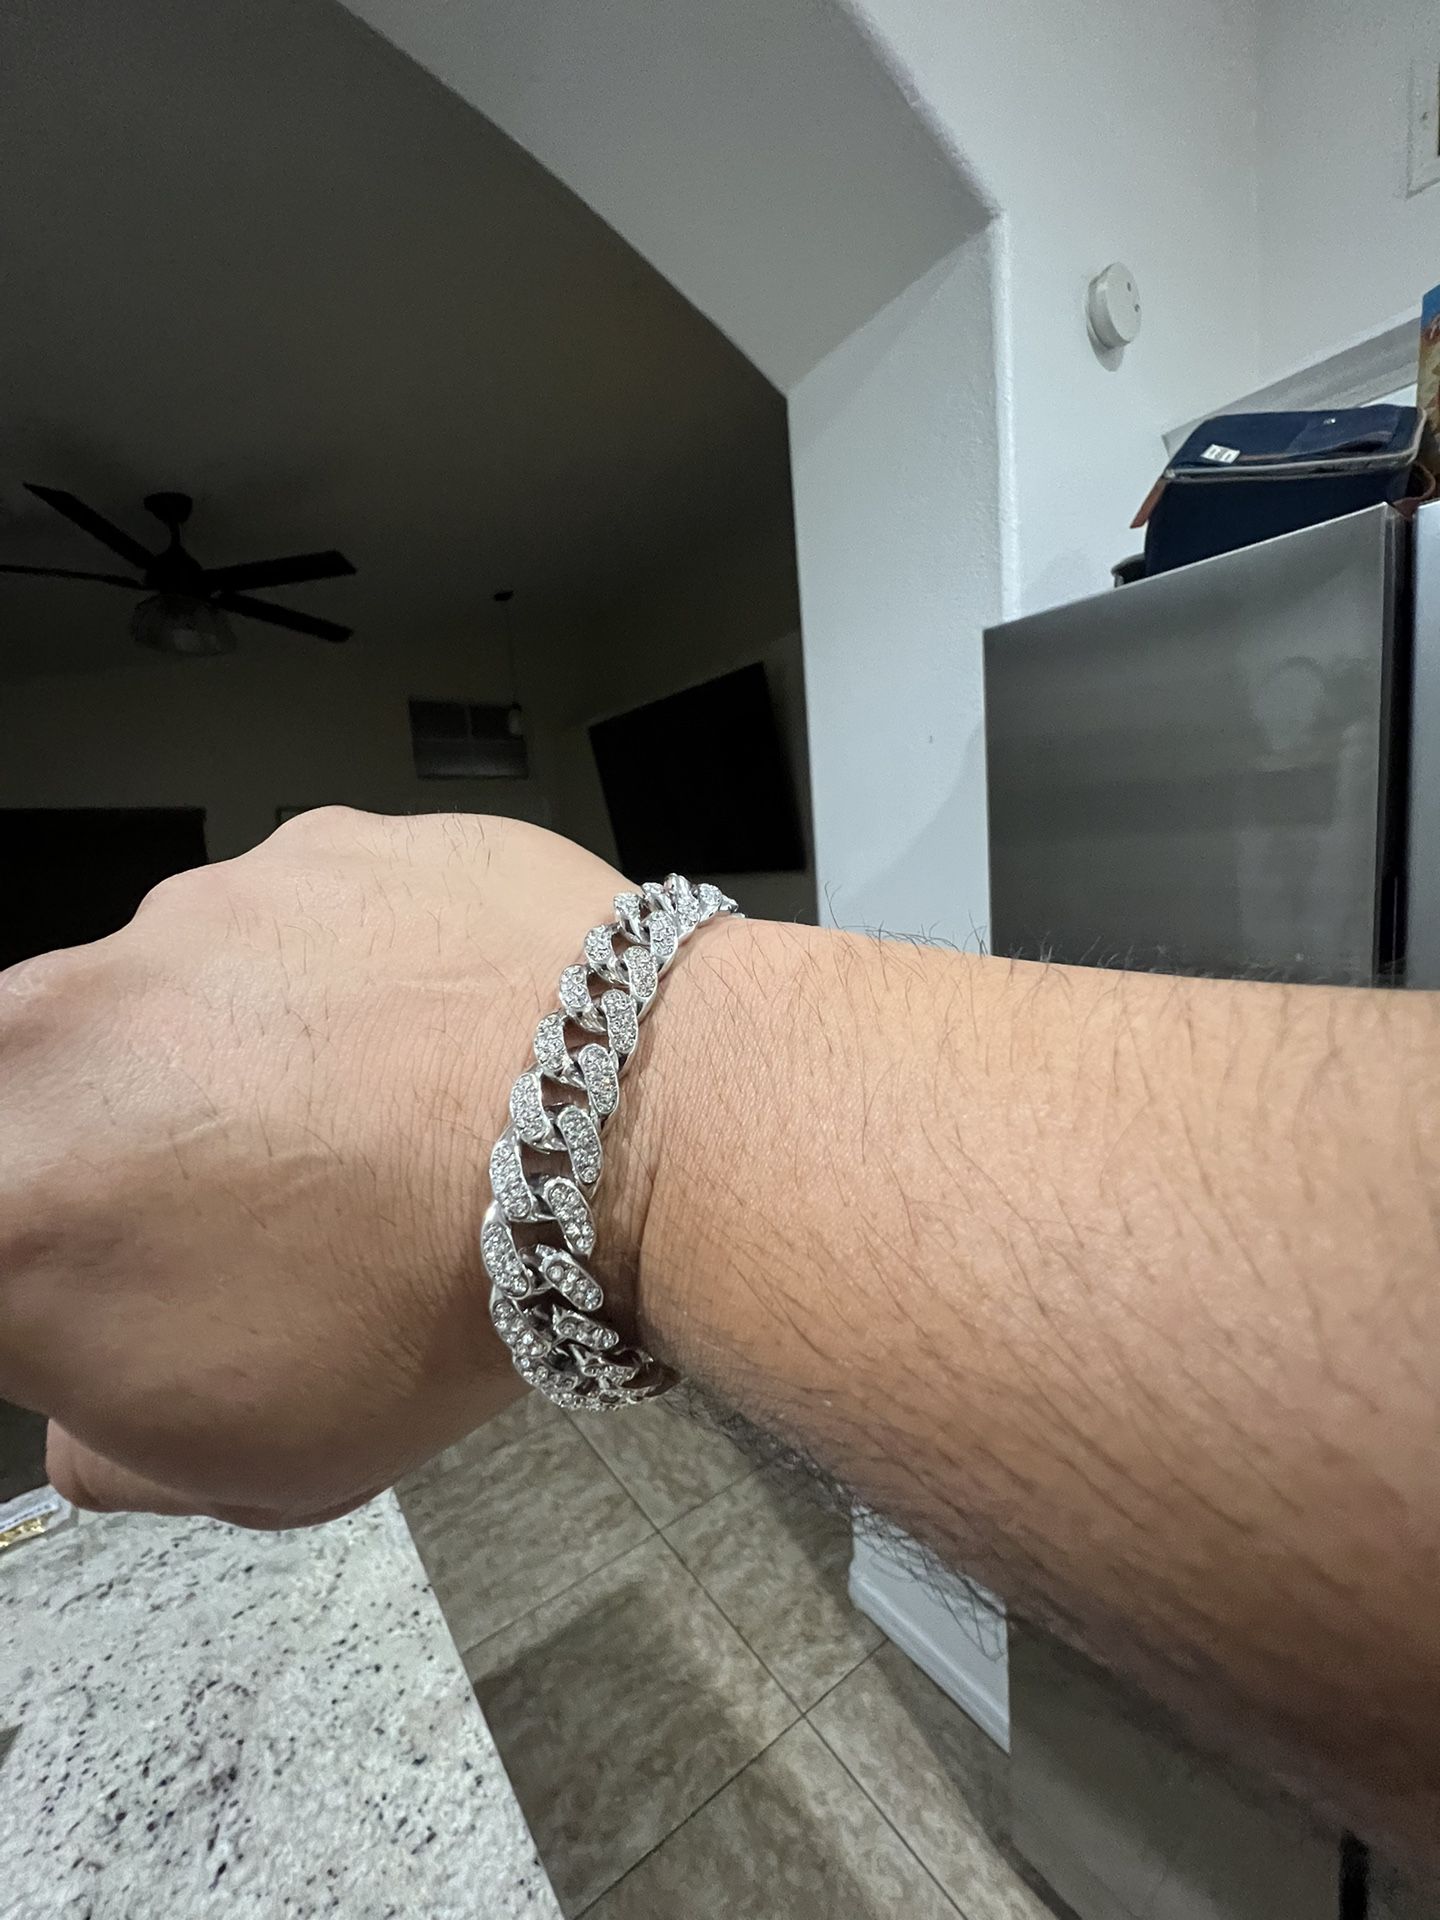 Cuban Link Silver Bracelet 